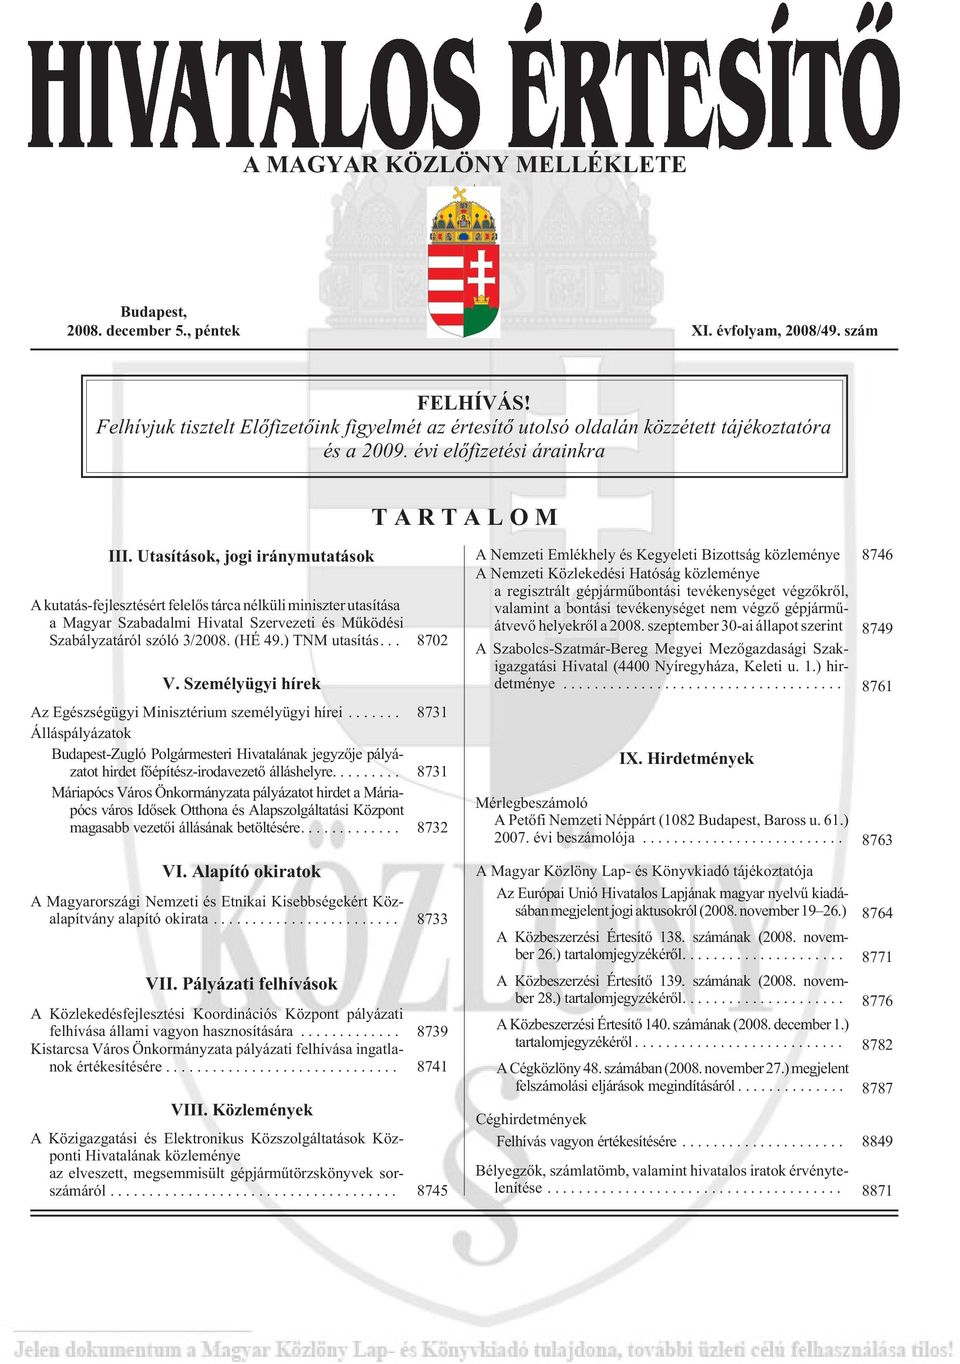 Utasítások, jogi iránymutatások A kutatás-fejlesztésért felelõs tárca nélküli miniszter utasítása a Magyar Szabadalmi Hivatal Szervezeti és Mûködési Szabályzatáról szóló 3/2008. (HÉ 49.) TNM utasítás.